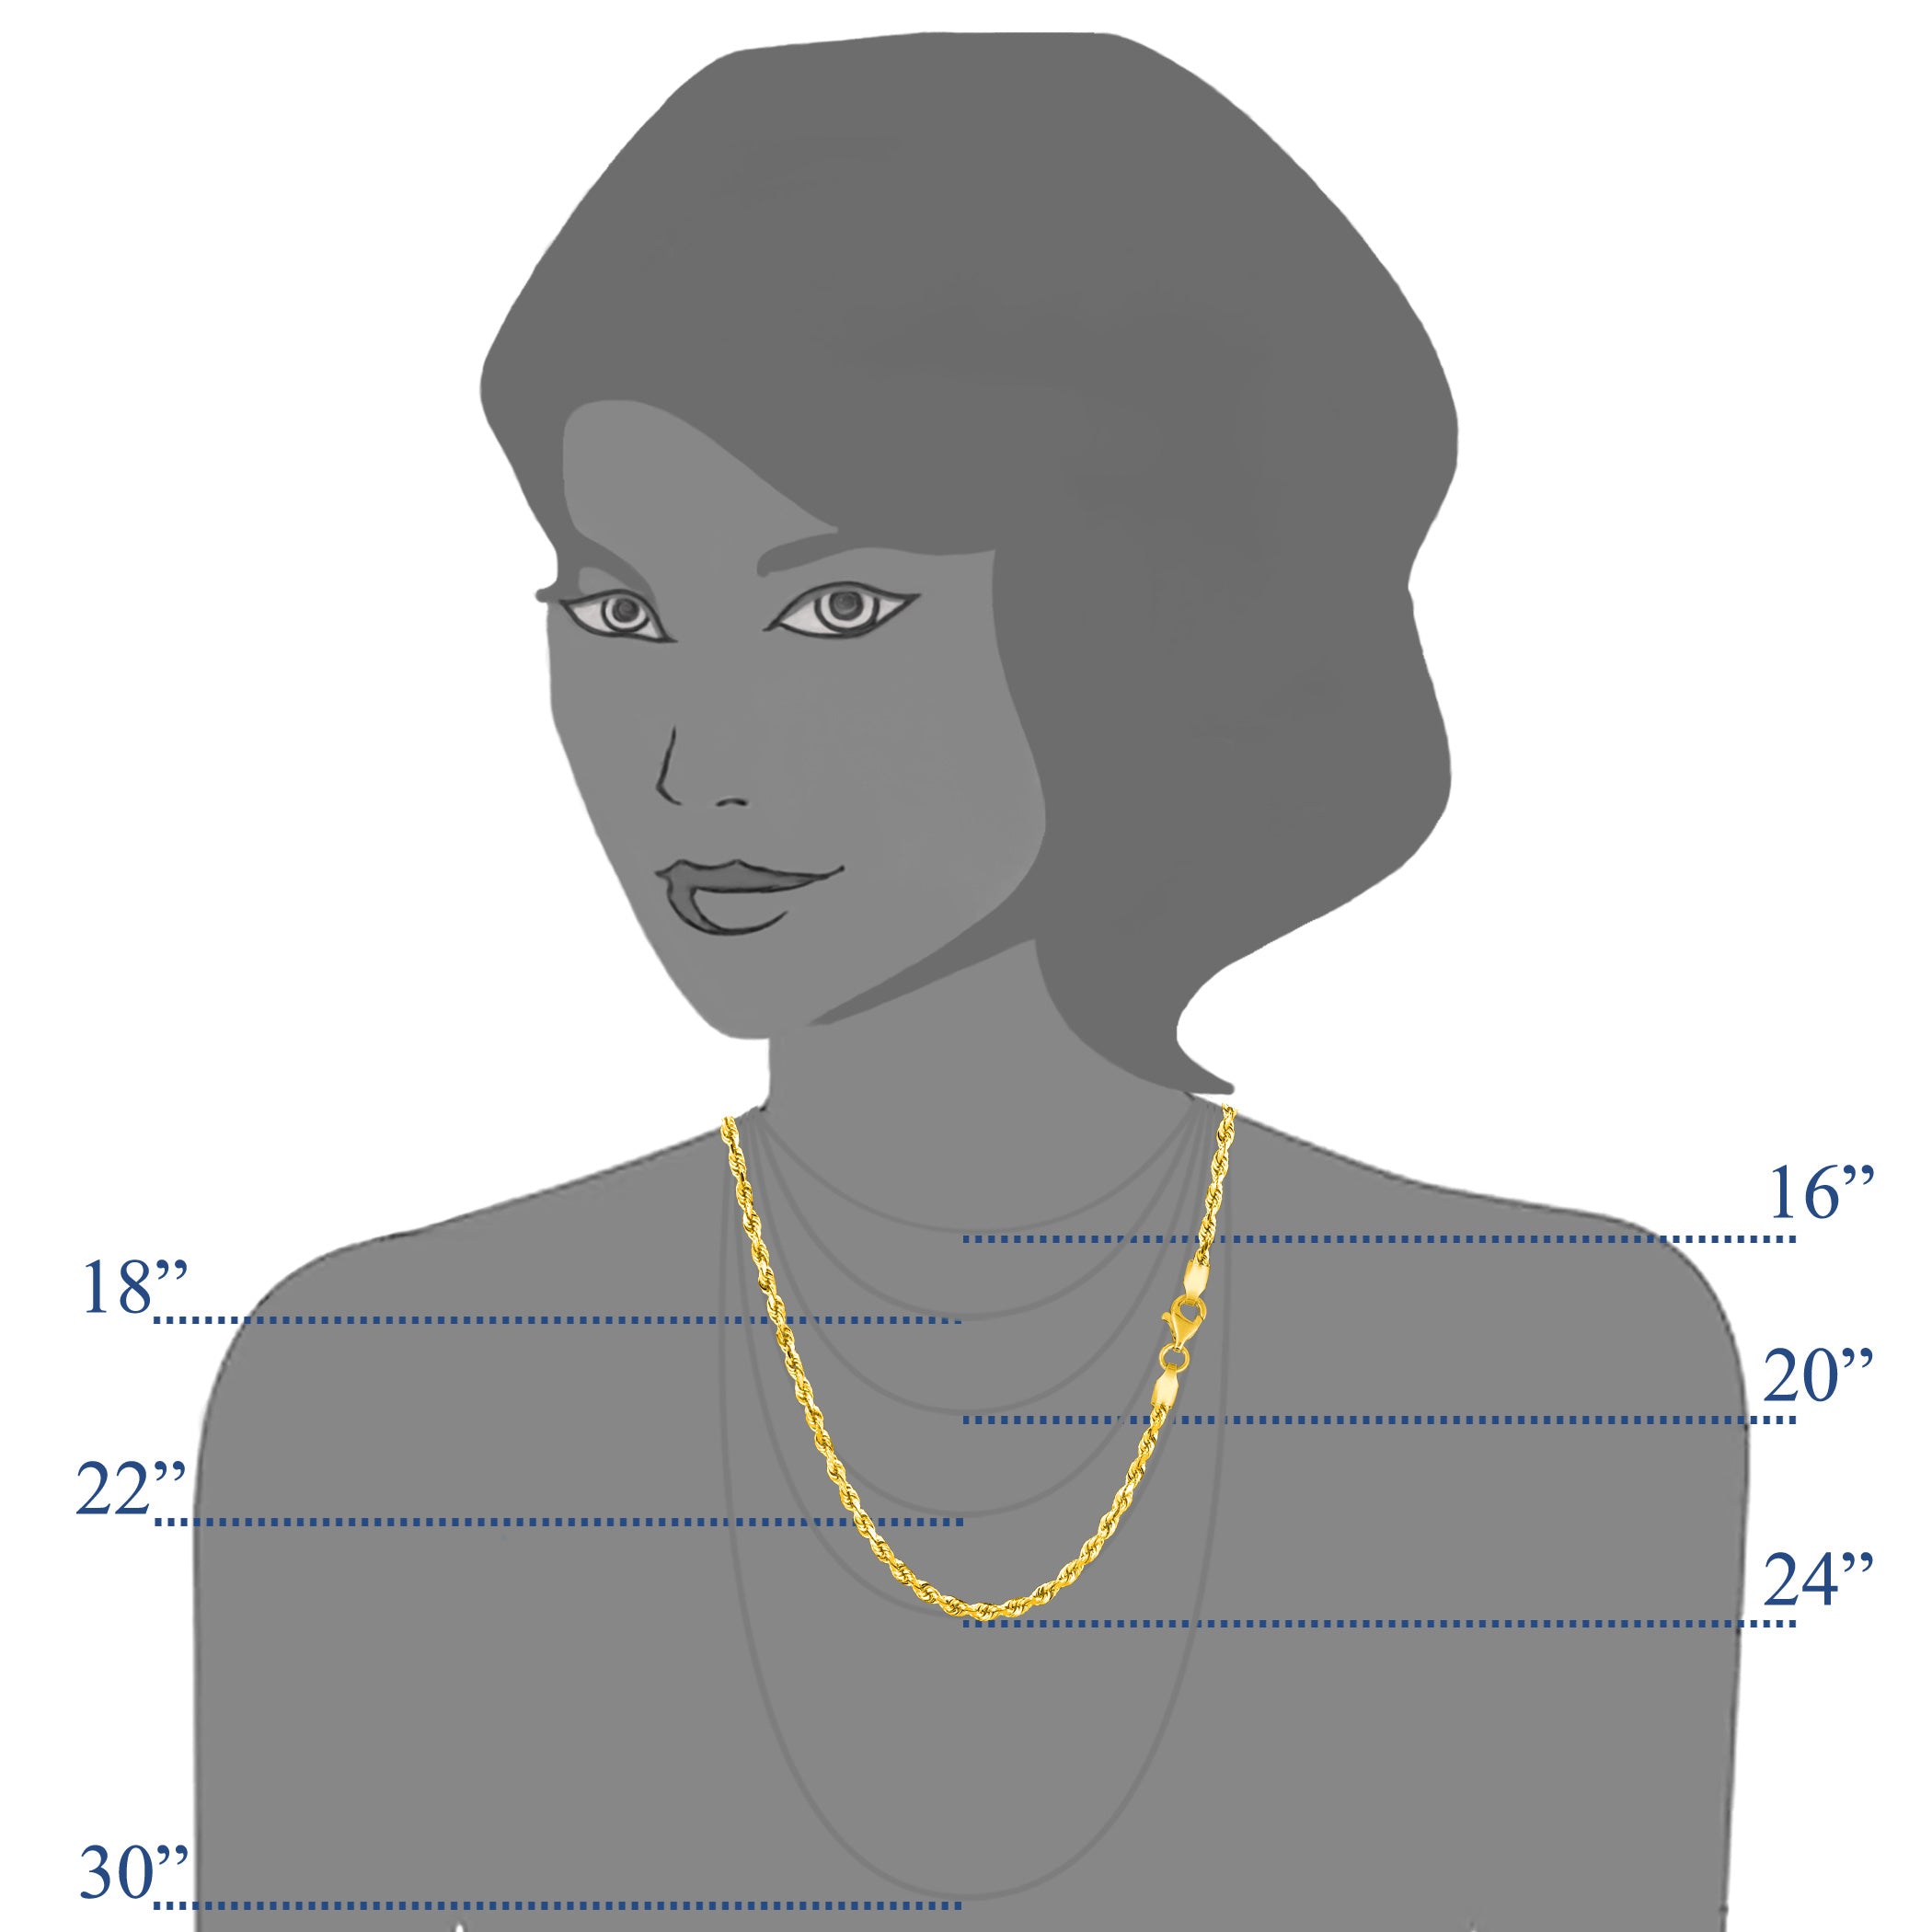 10 k gul solid guld diamantskåret rebkæde halskæde, 2,5 mm fine designersmykker til mænd og kvinder